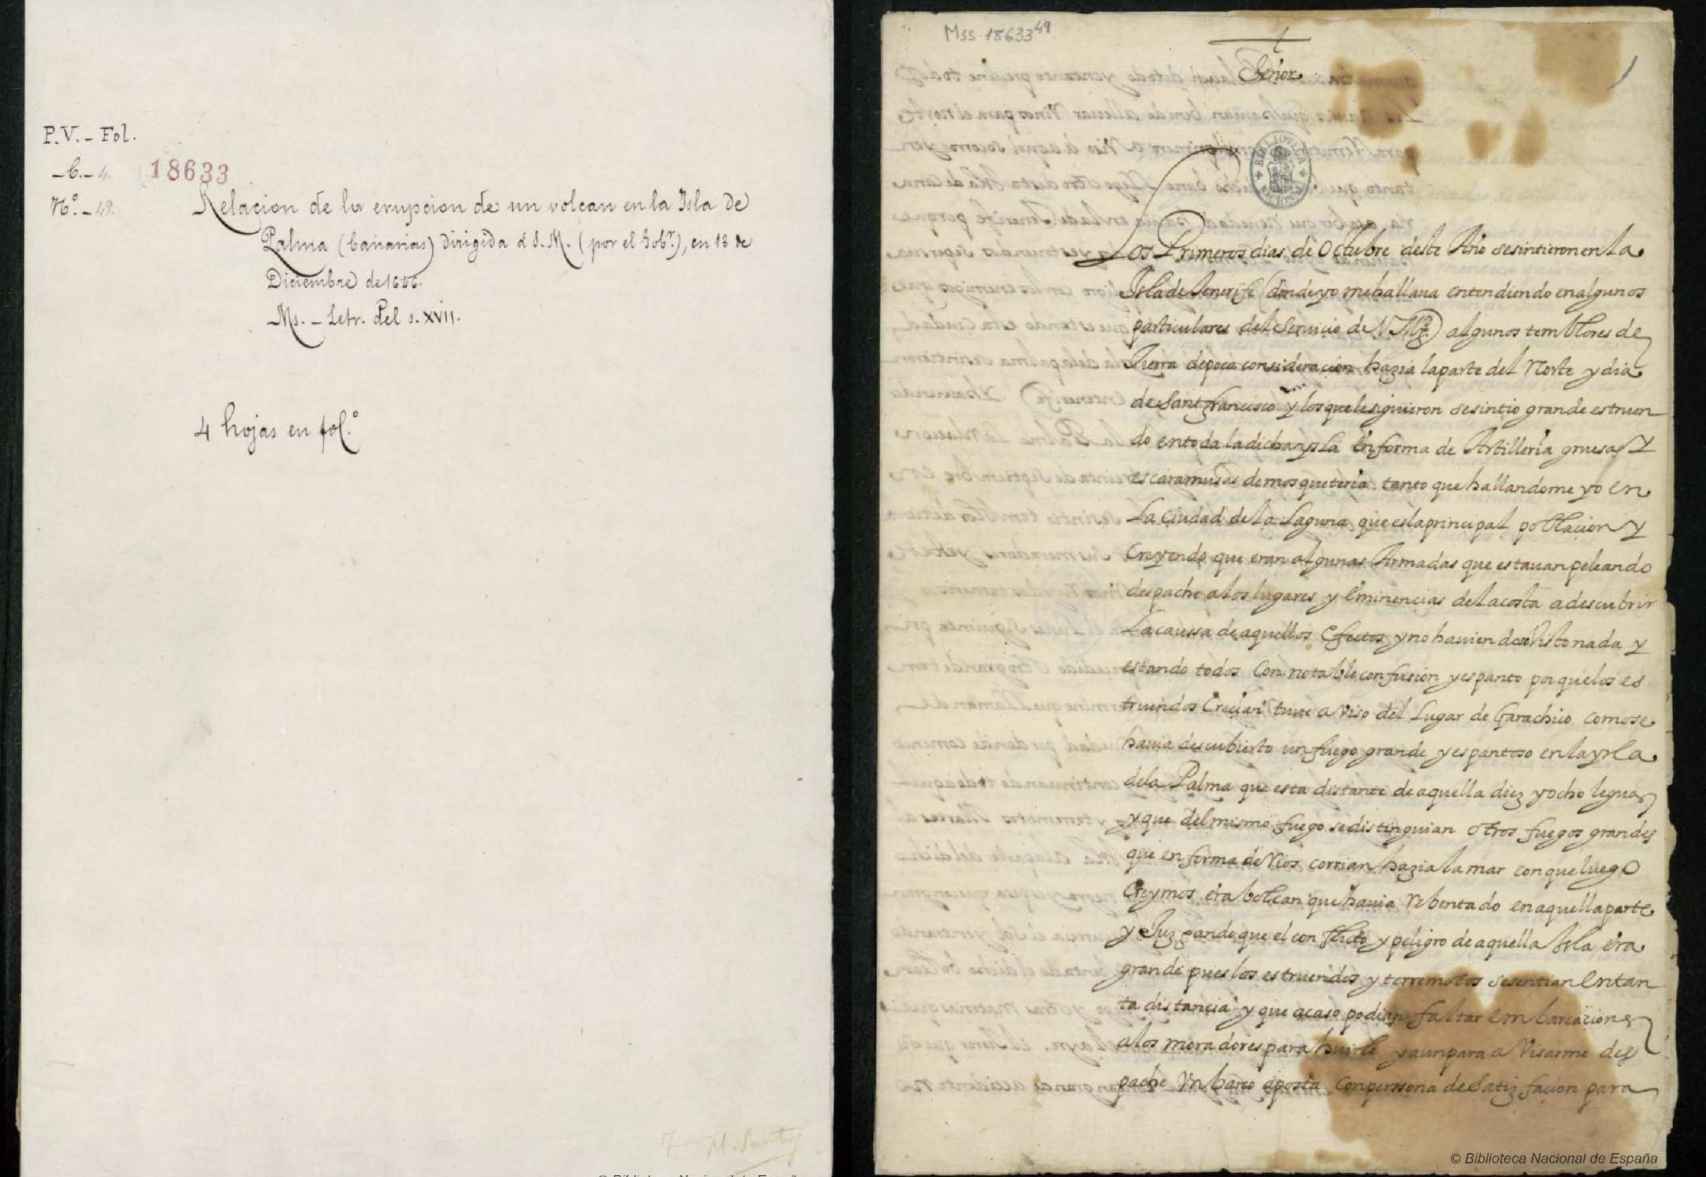 La carta manuscrita por el gobernador de las islas a Felipe IV.